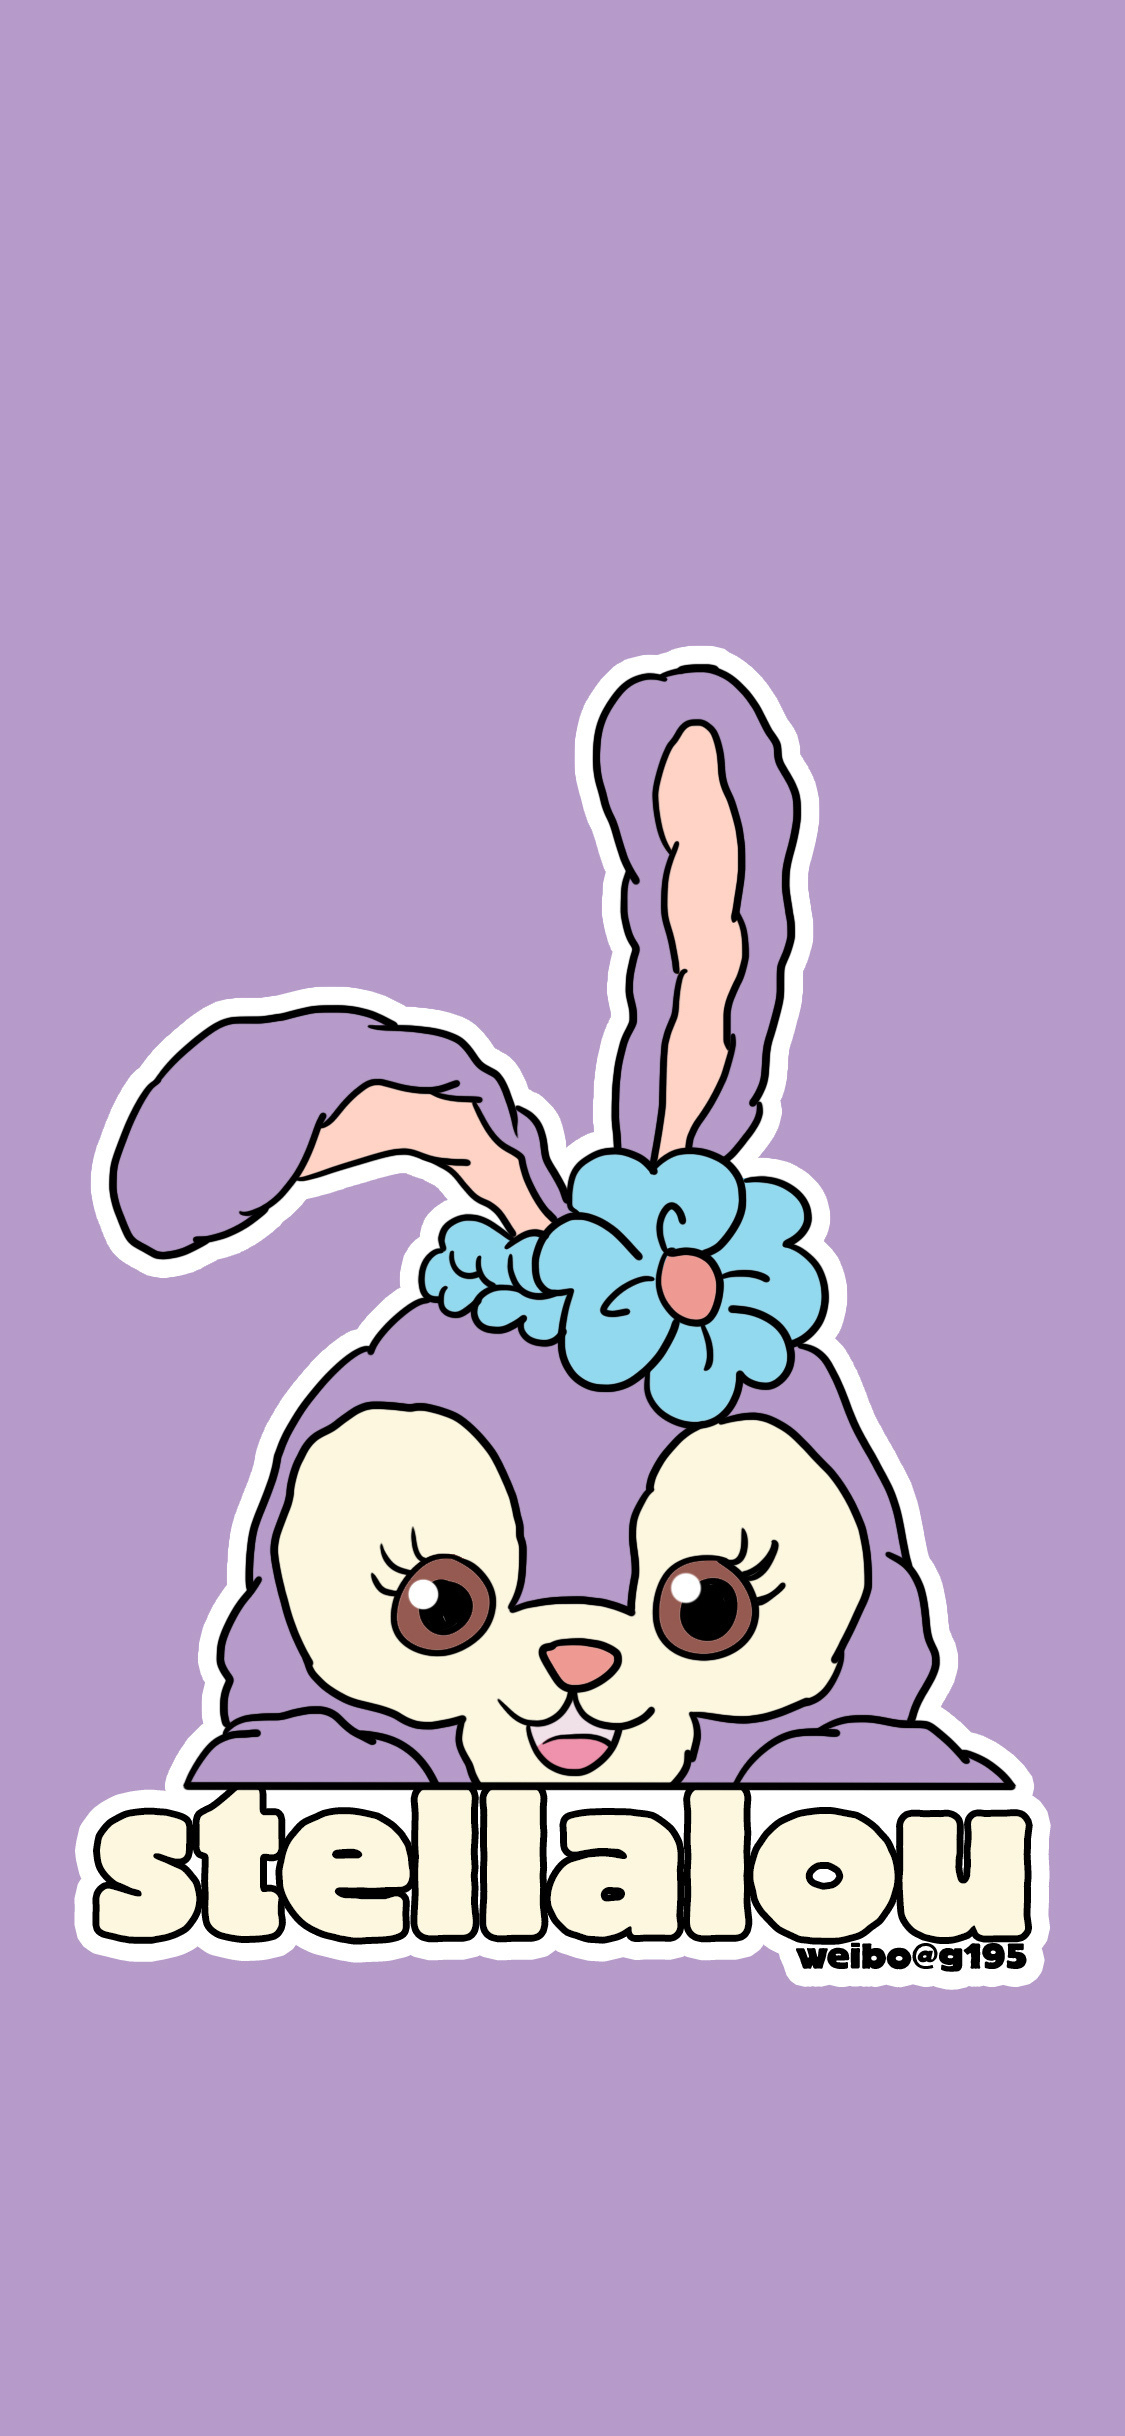 兔子壁纸可爱卡通紫色图片